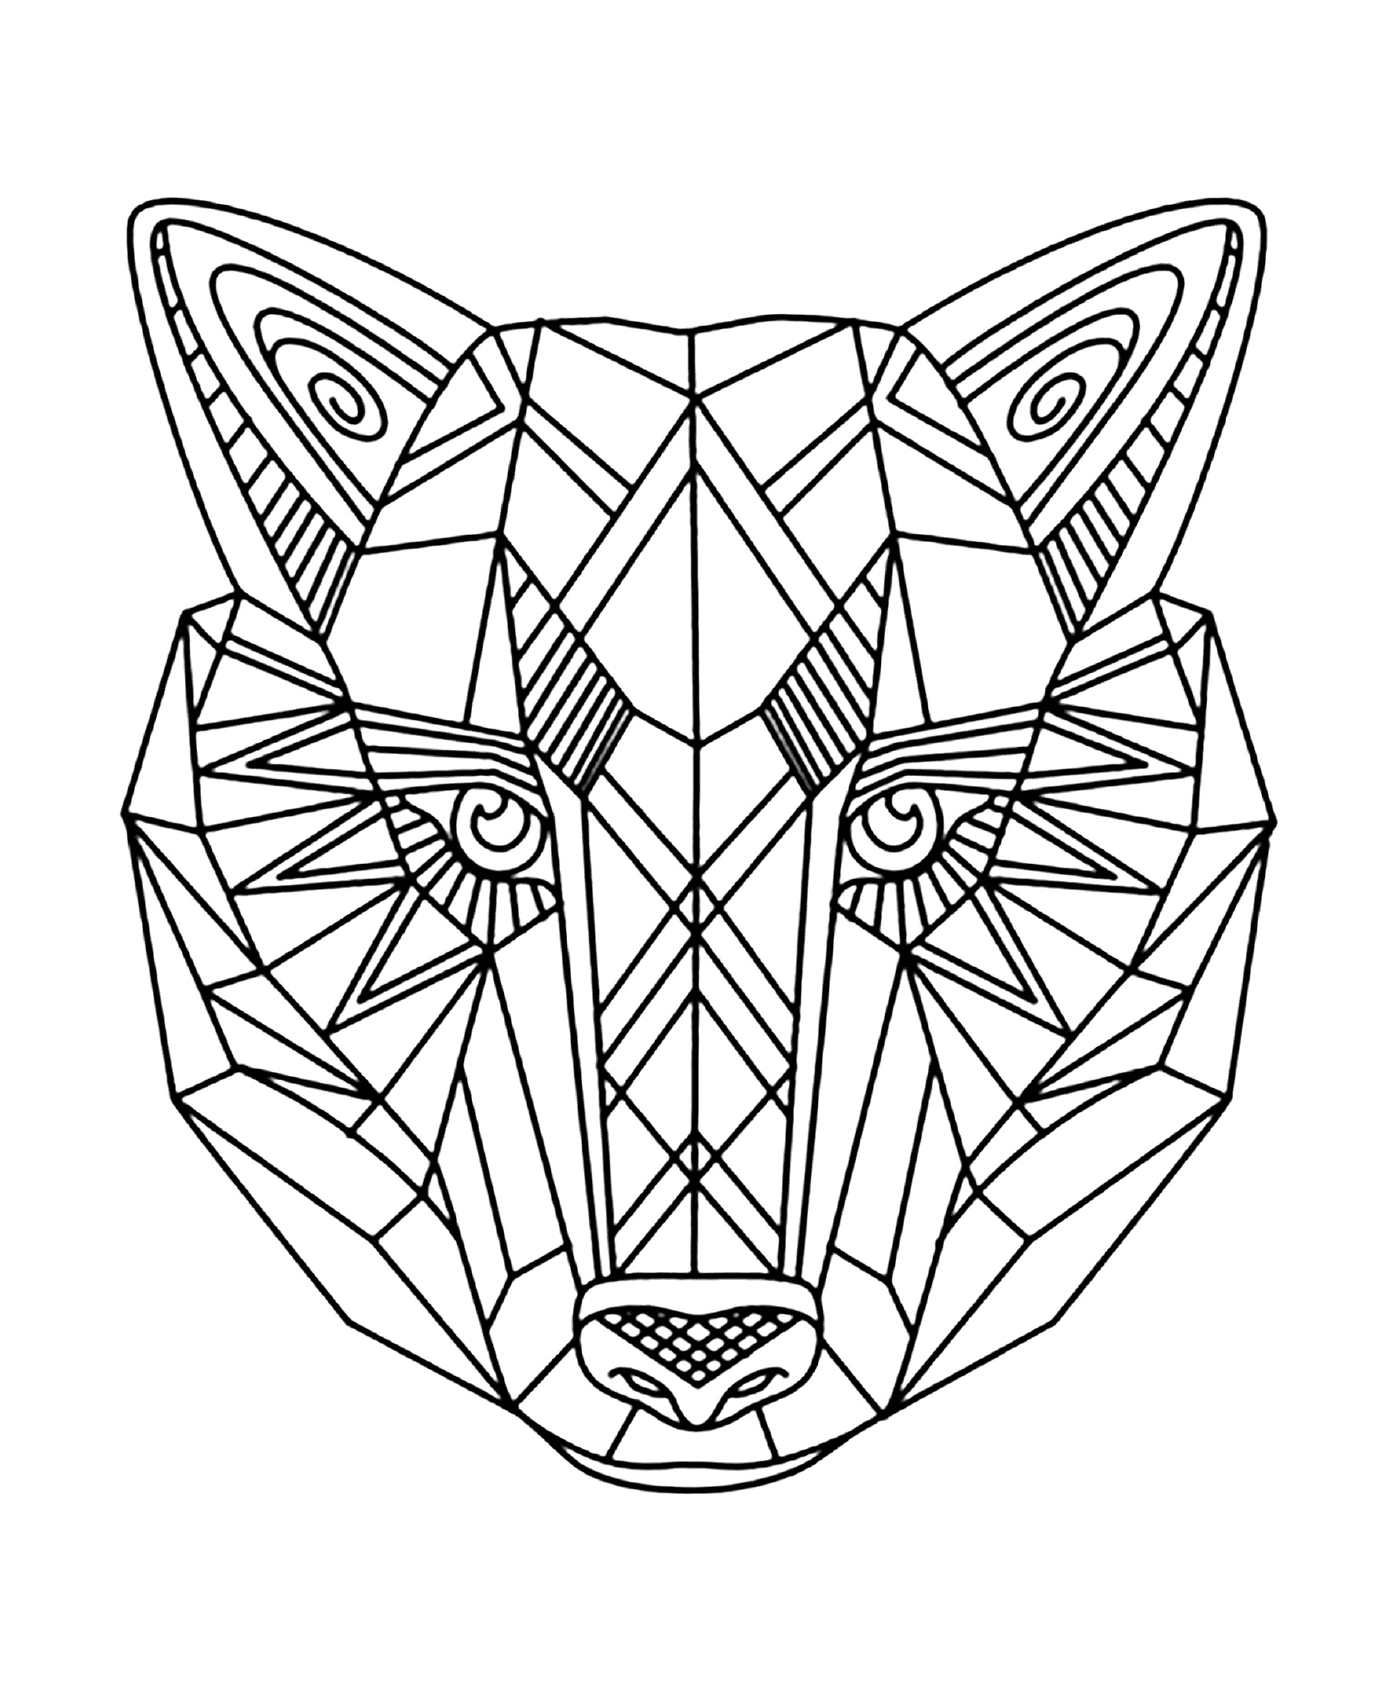  Животные с геометрическим рисунком на лице 